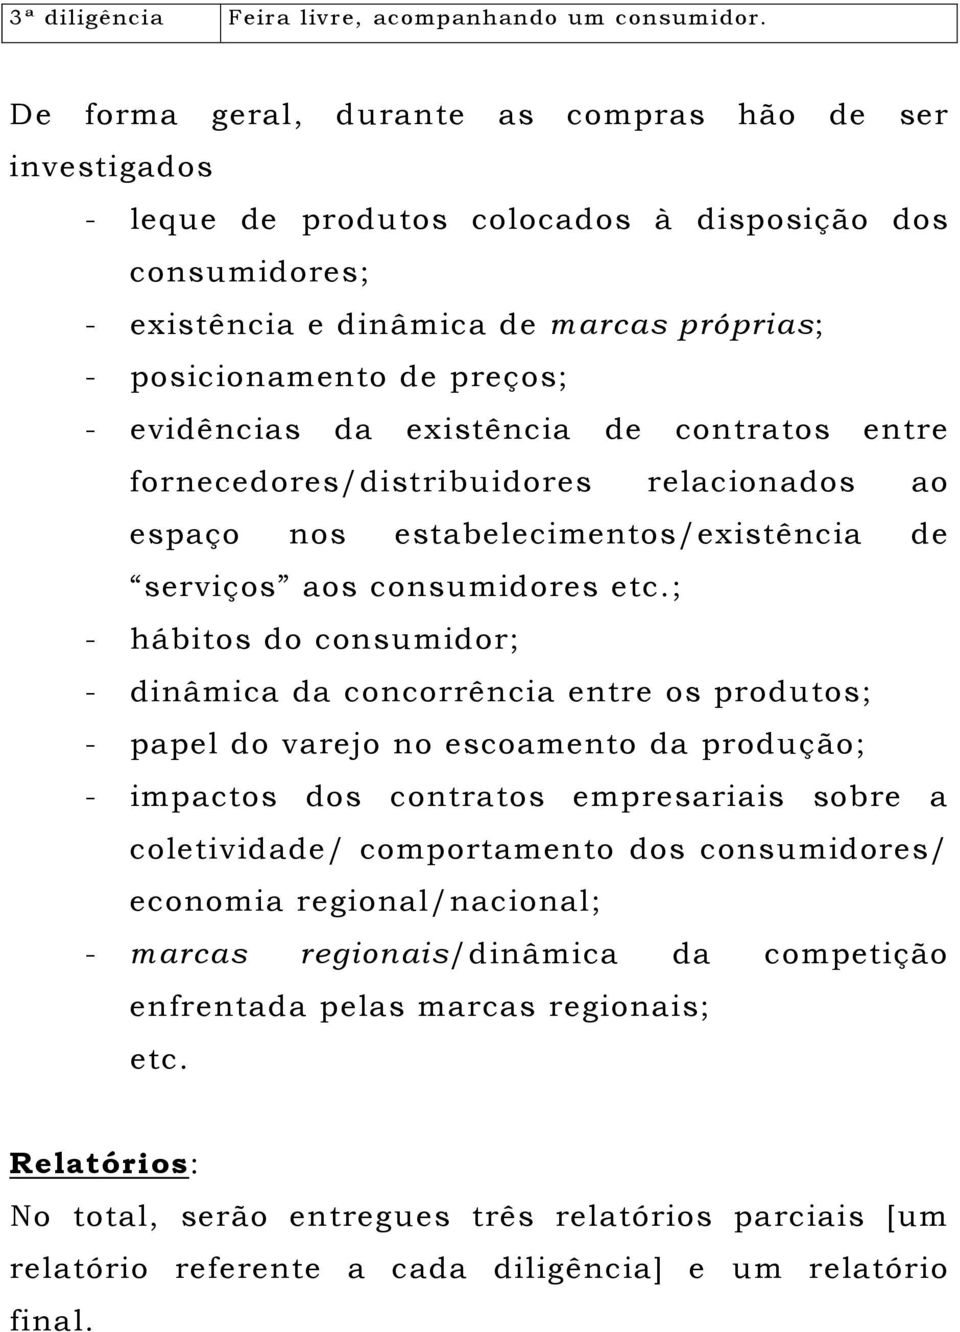 evidências da existência de contratos entre fornecedores/distribuidores relacionados ao espaço nos estabelecimentos/existência de serviços aos consumidores etc.